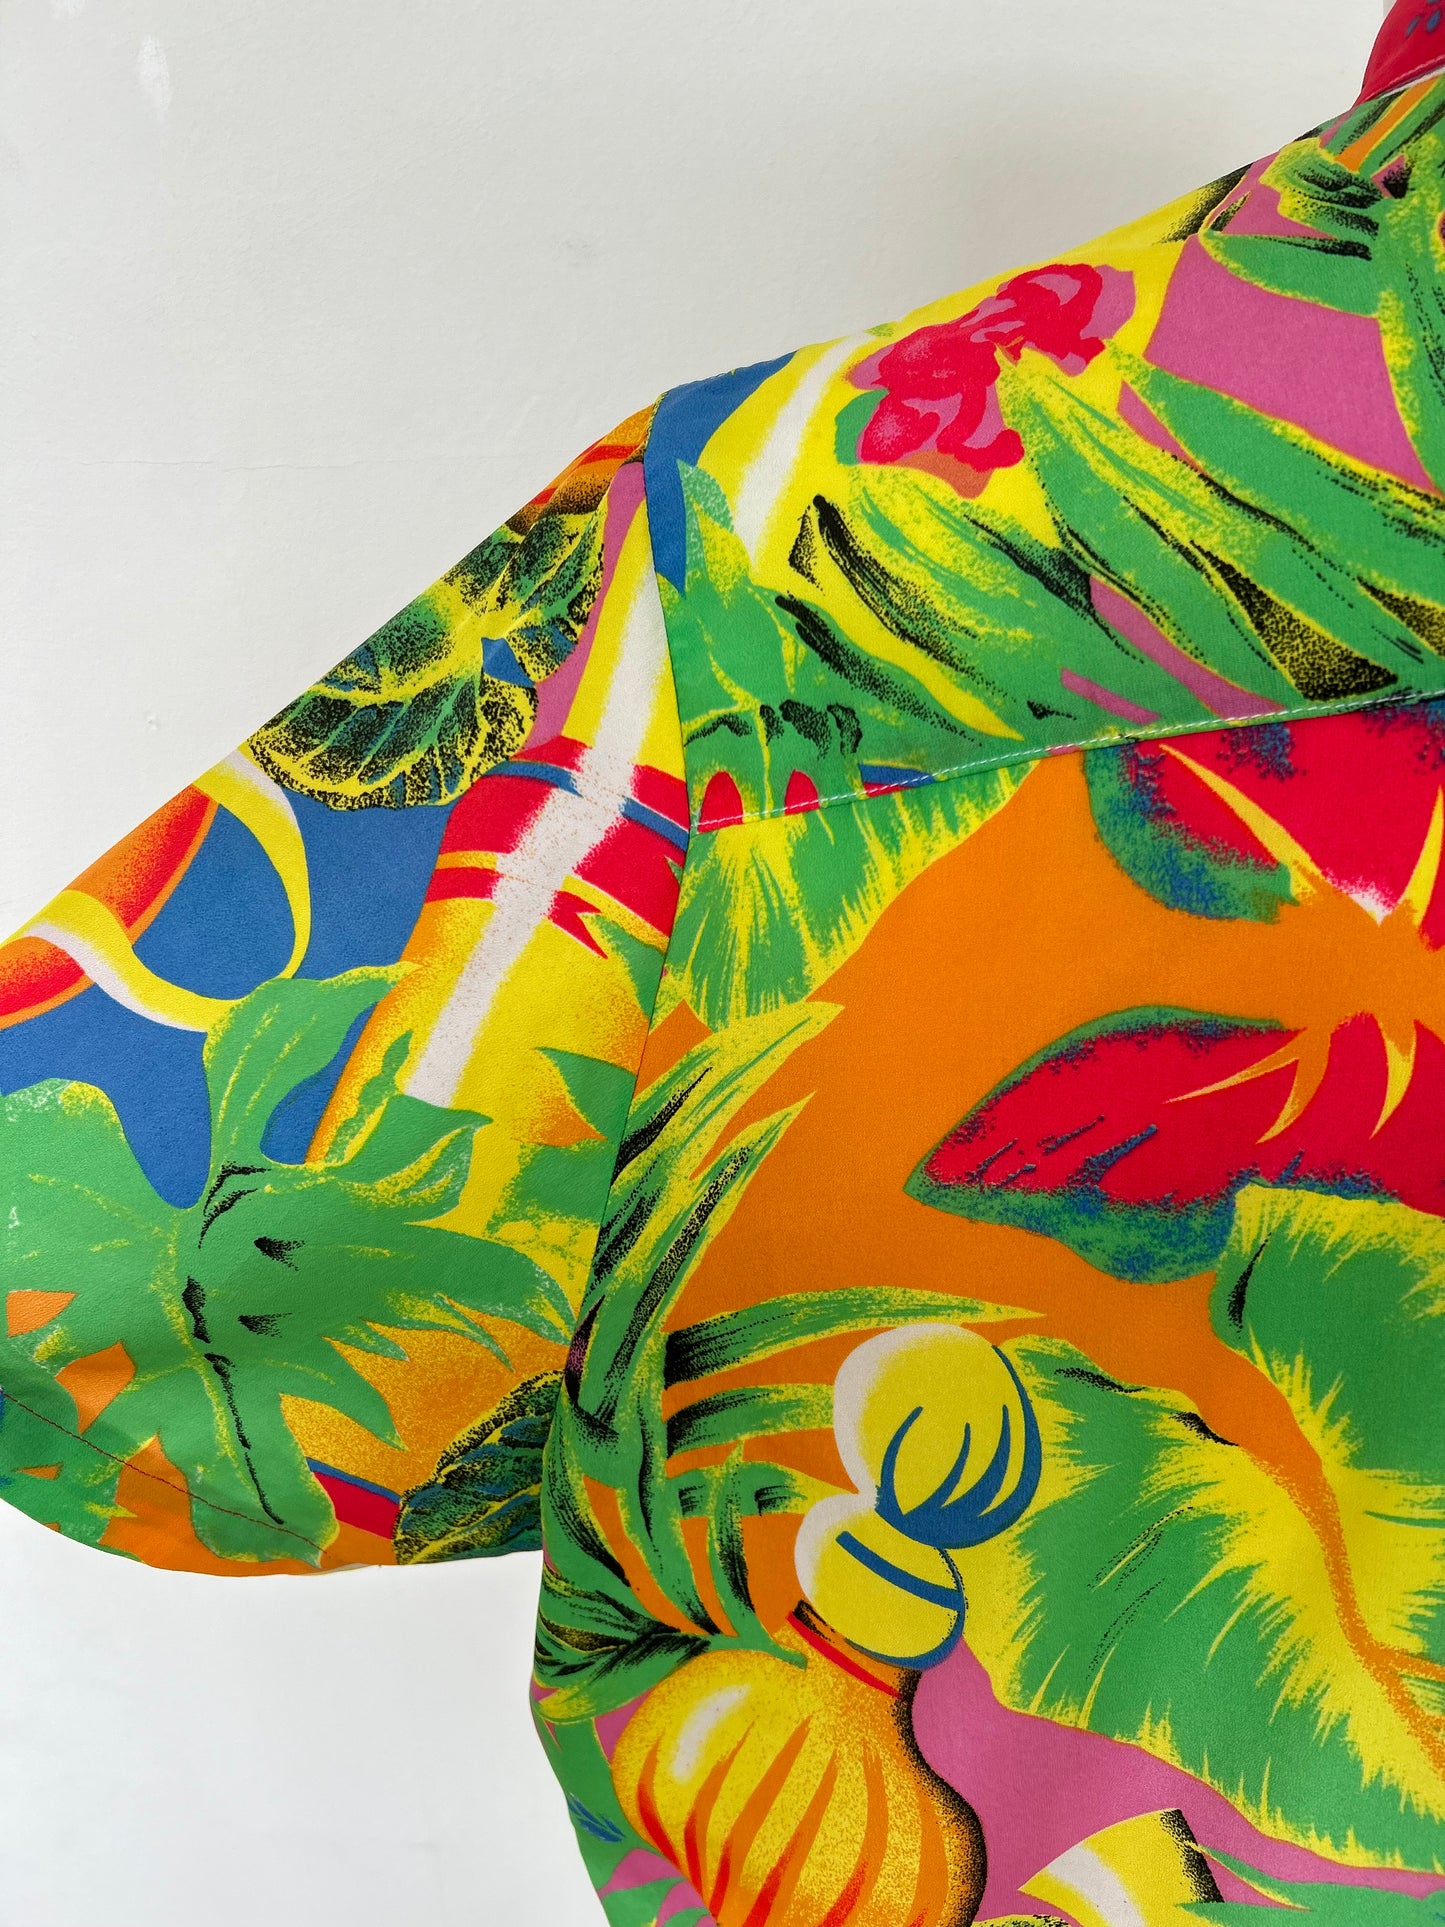 Chemise fiesta tropique